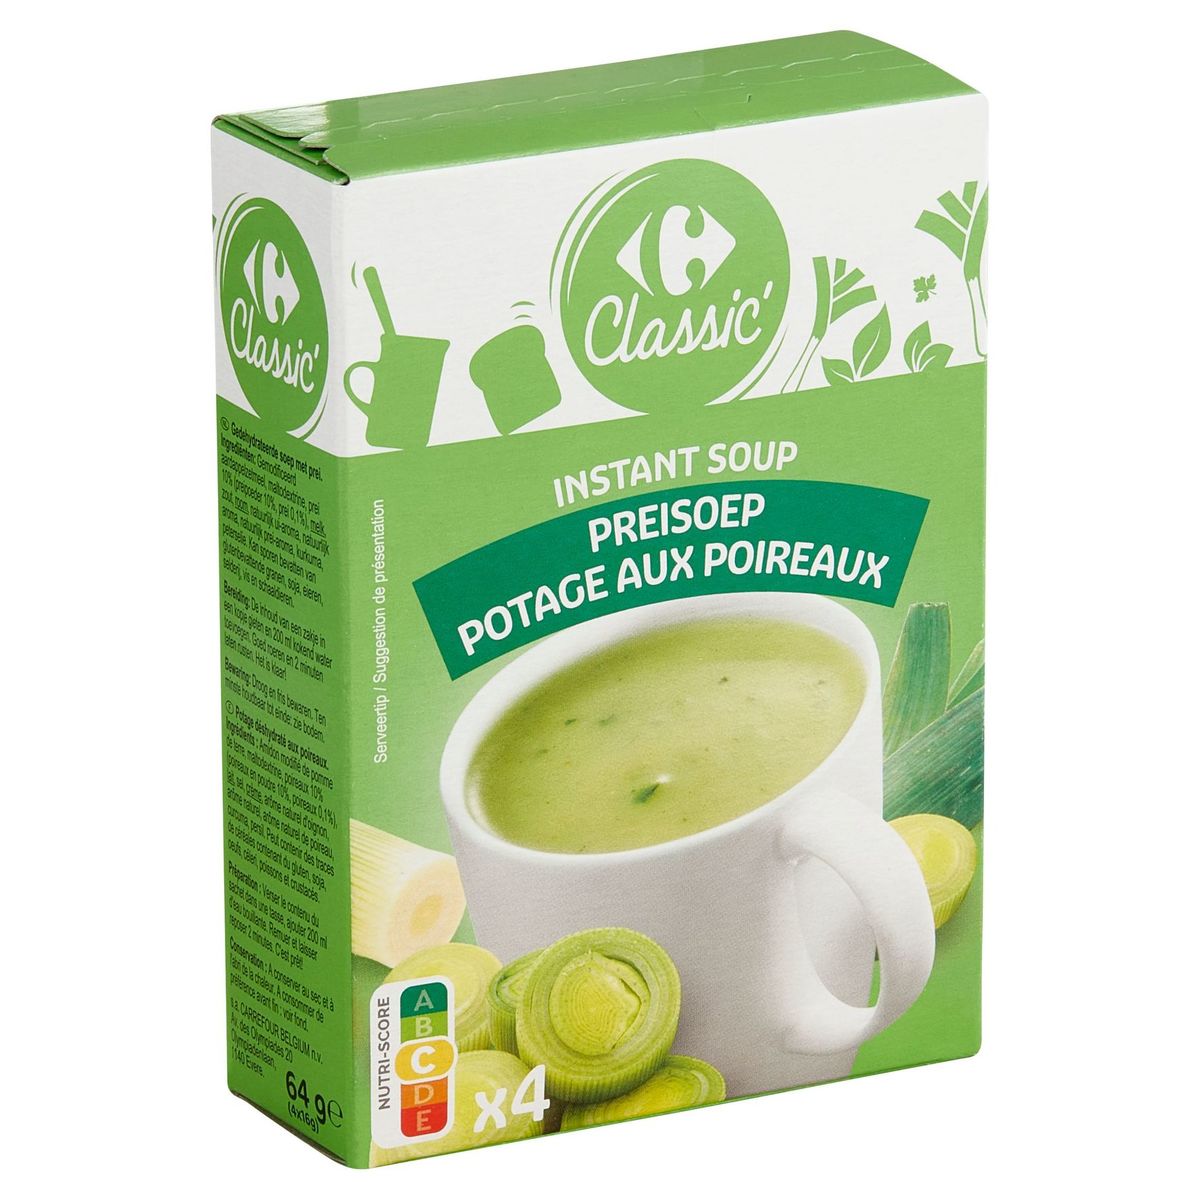 Carrefour Classic' Instant Soup Preisoup 4 x 16 g